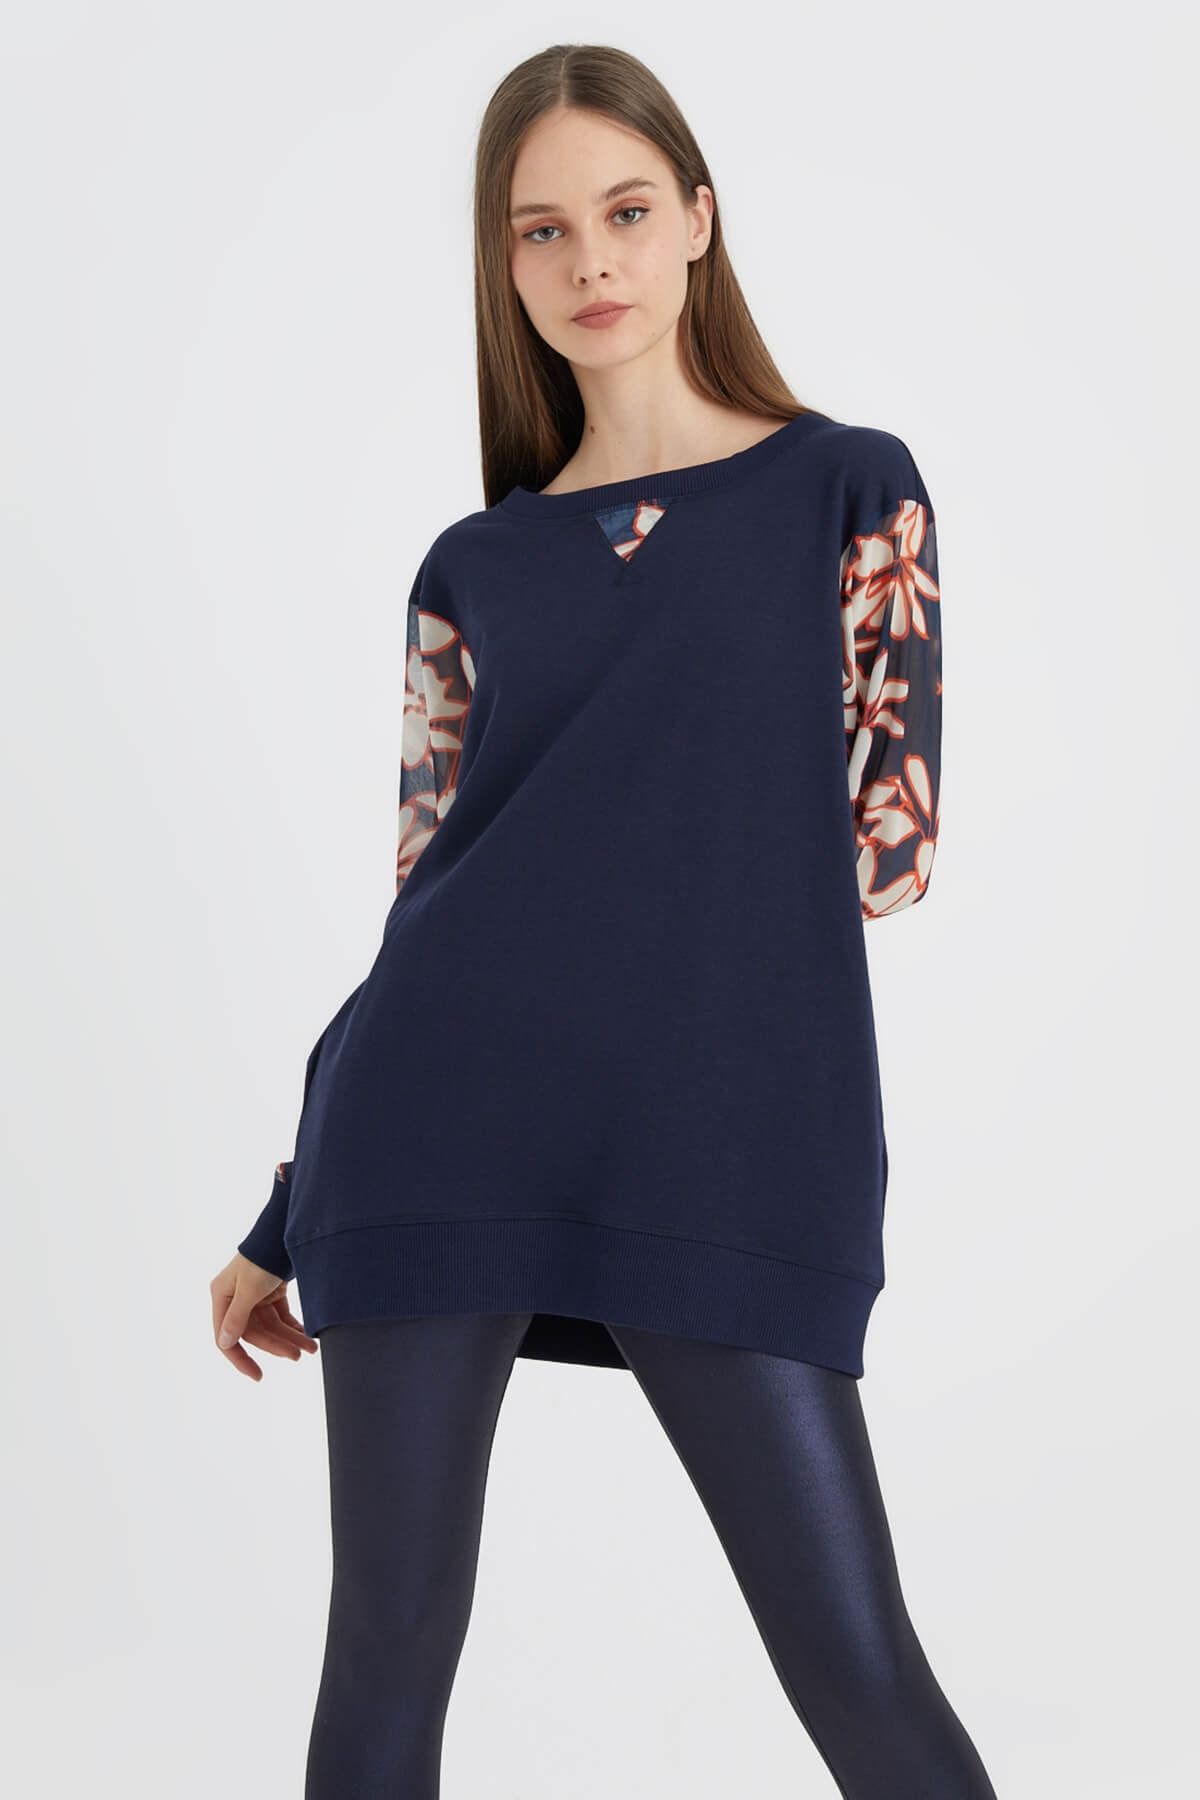 Hanna's Kadın Lacivert Kolları Şifon Desenli Örme Sweatshirt